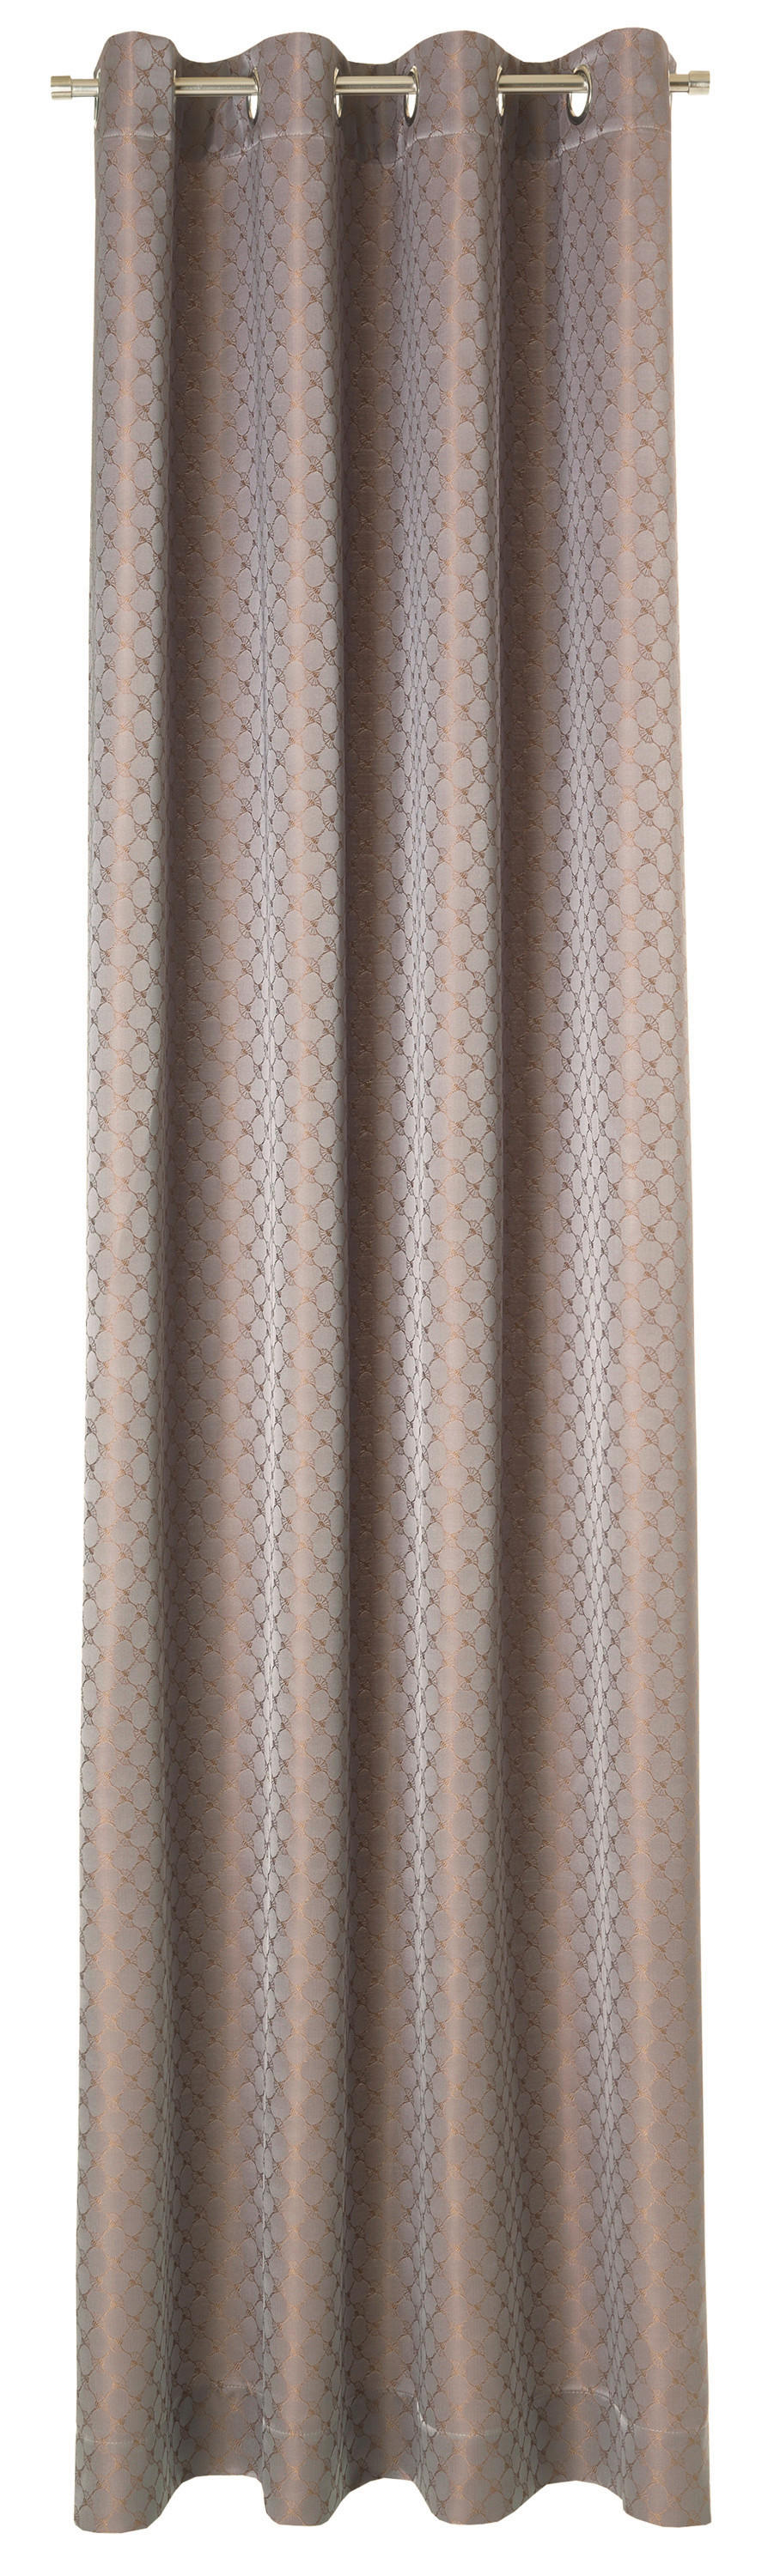 ÖSENSCHAL J-Allovers blickdicht 140/250 cm   - Graubraun, Basics, Textil (140/250cm) - Joop!